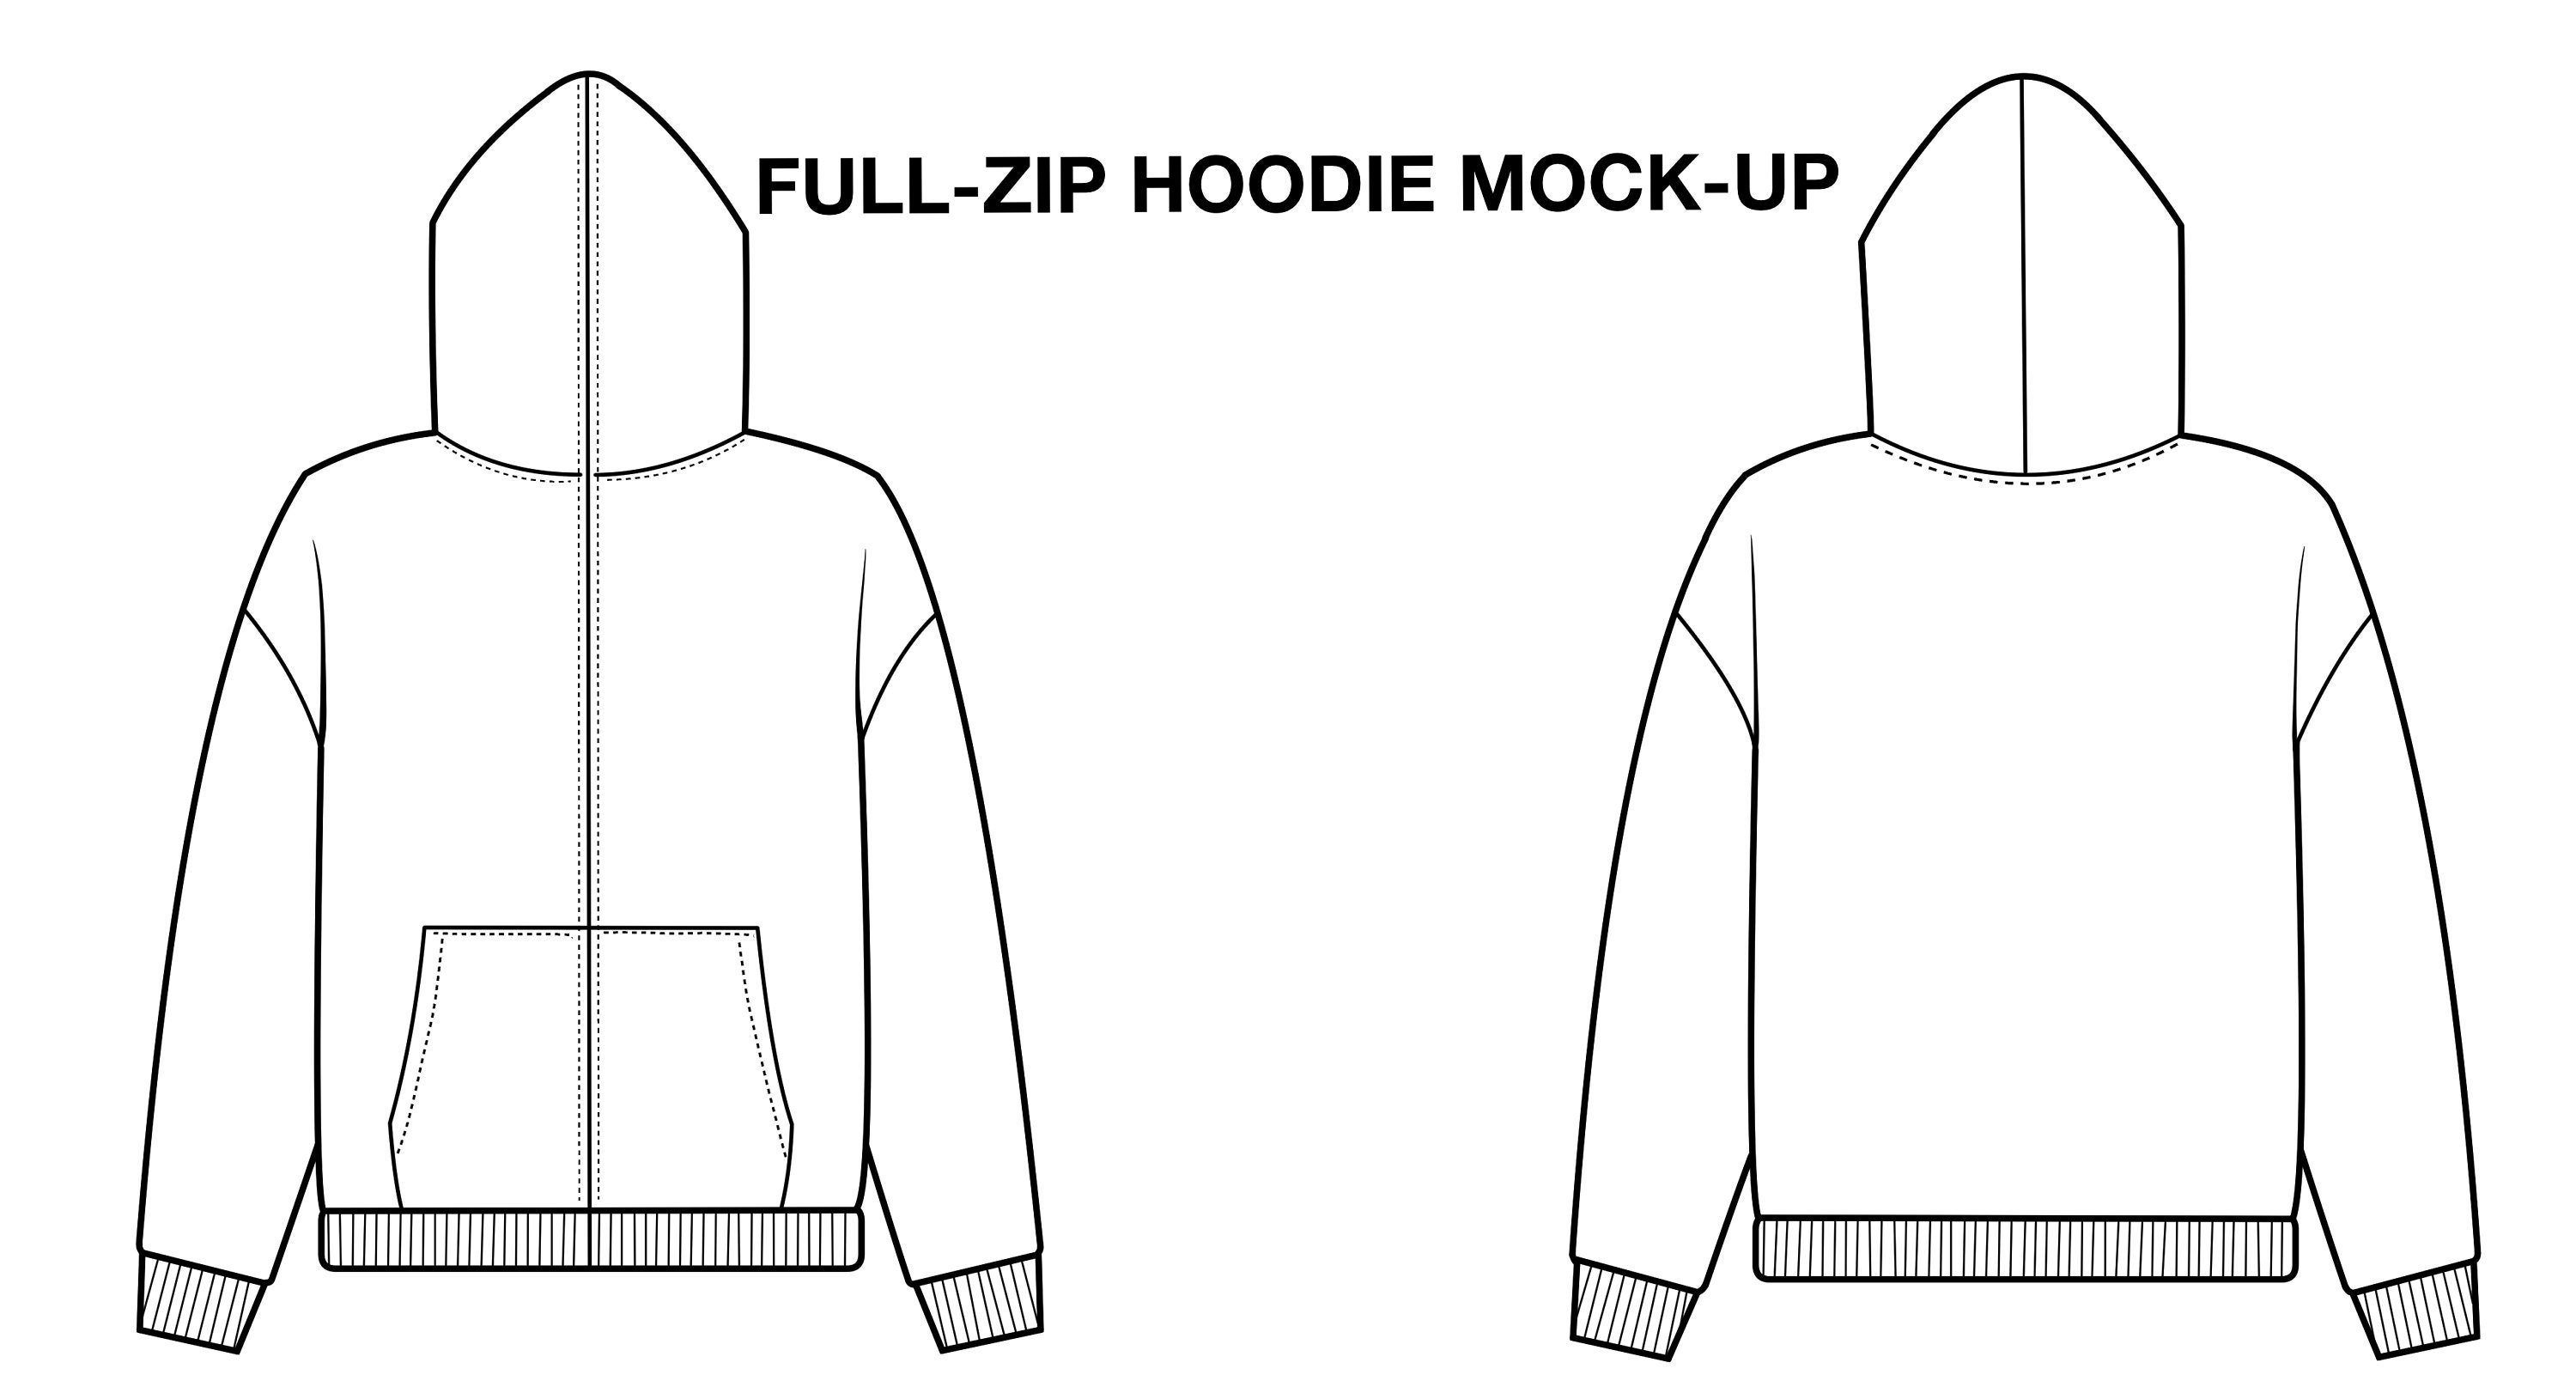 CM8600 BLACK ZIPPER HOODIE  Zip hoodie outfit, Hoodie mockup, Clothing  mockup